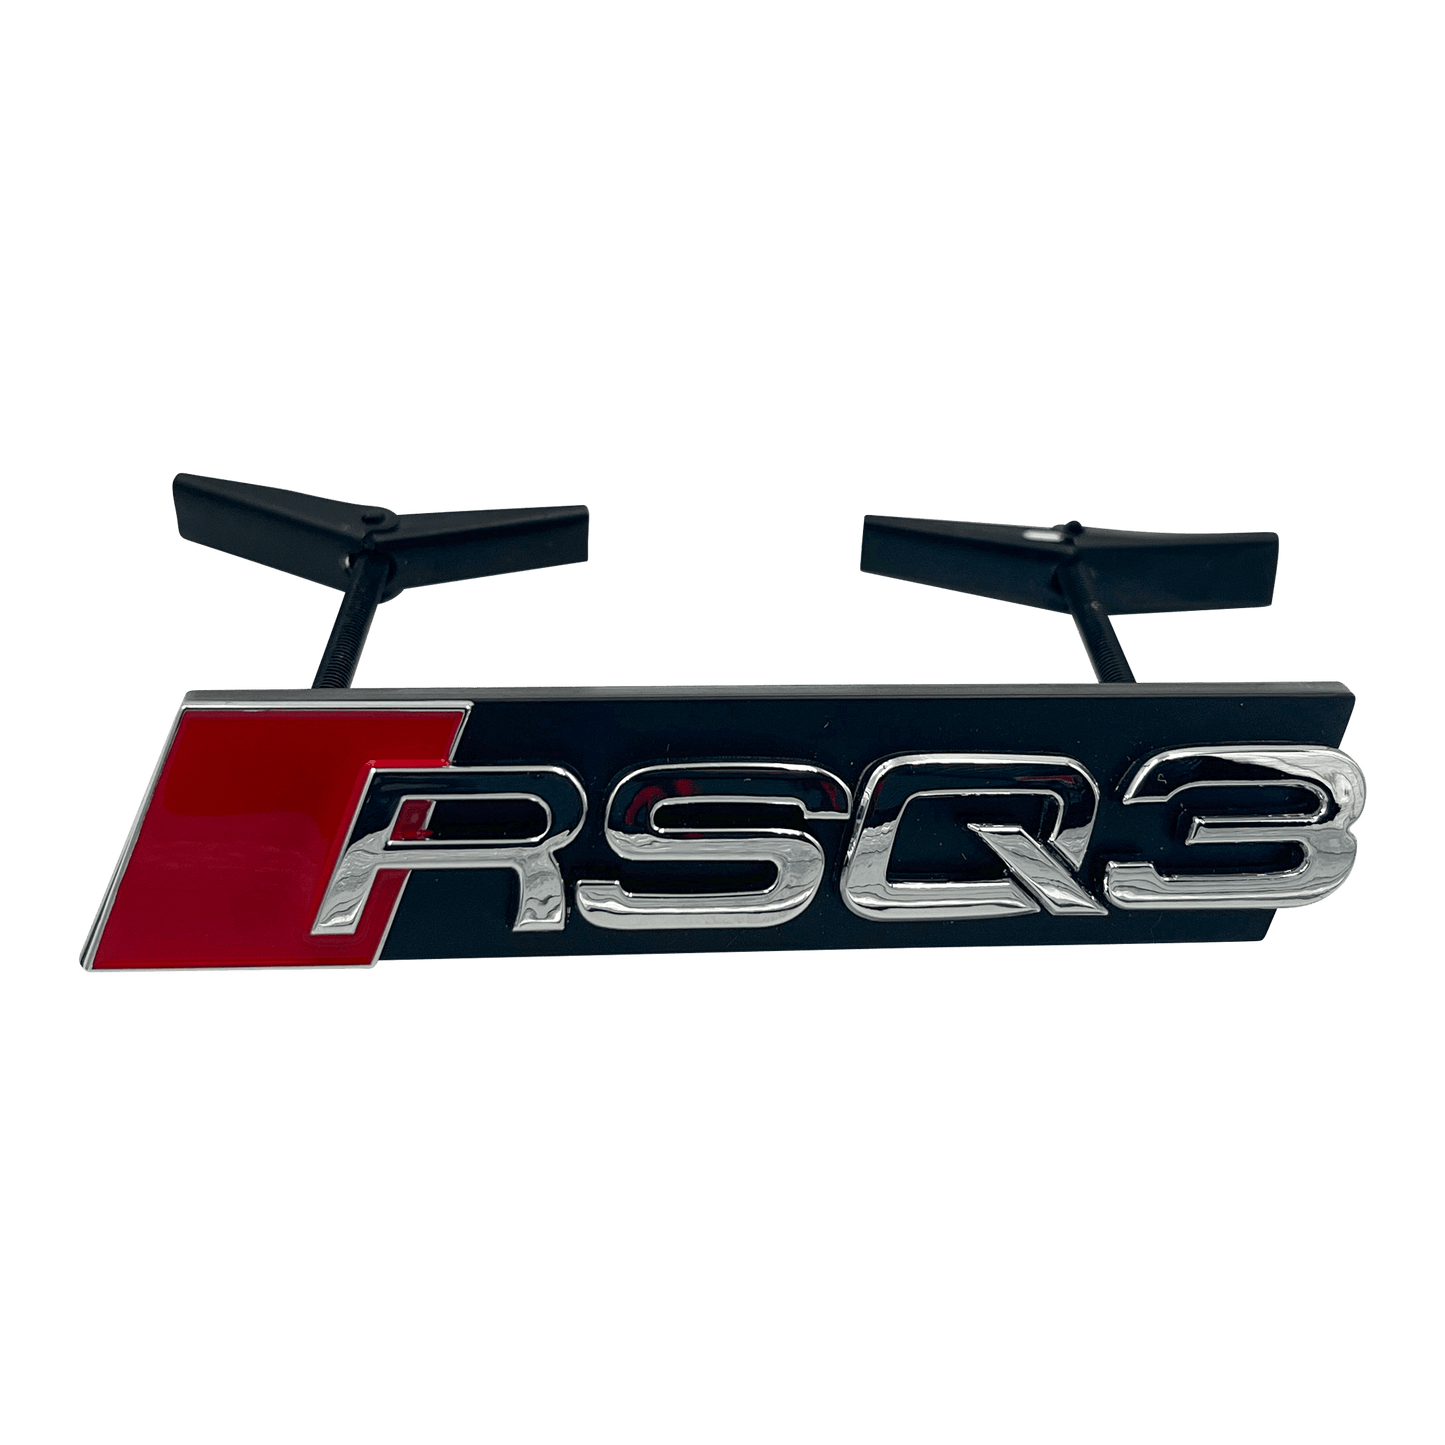 Chrome Audi RSQ3 Front Emblem